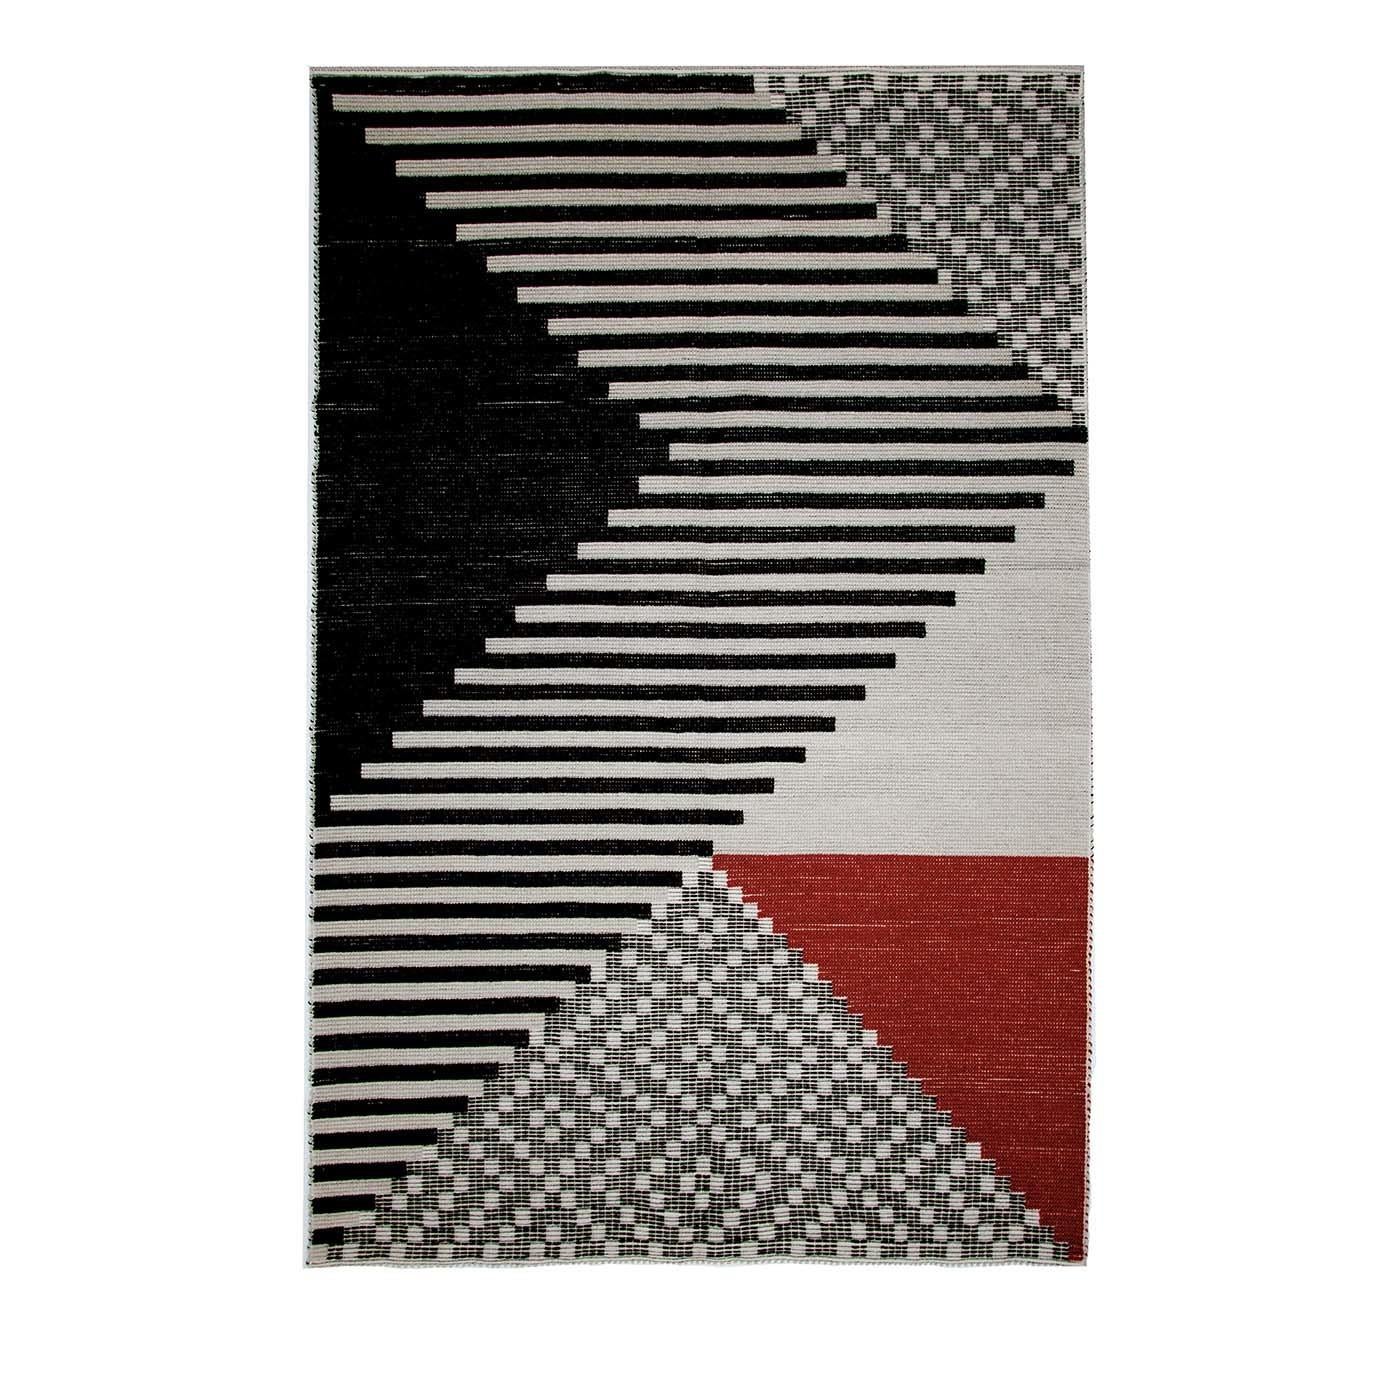 Dieser exquisite Teppich aus natürlicher sardischer Wolle wurde von Inveloveritas exklusiv für Extroverso entworfen und von Mariantonia Urru auf einem Webstuhl in traditioneller sardischer Pibiones- und Litzos-Technik handgefertigt. Dreieckige